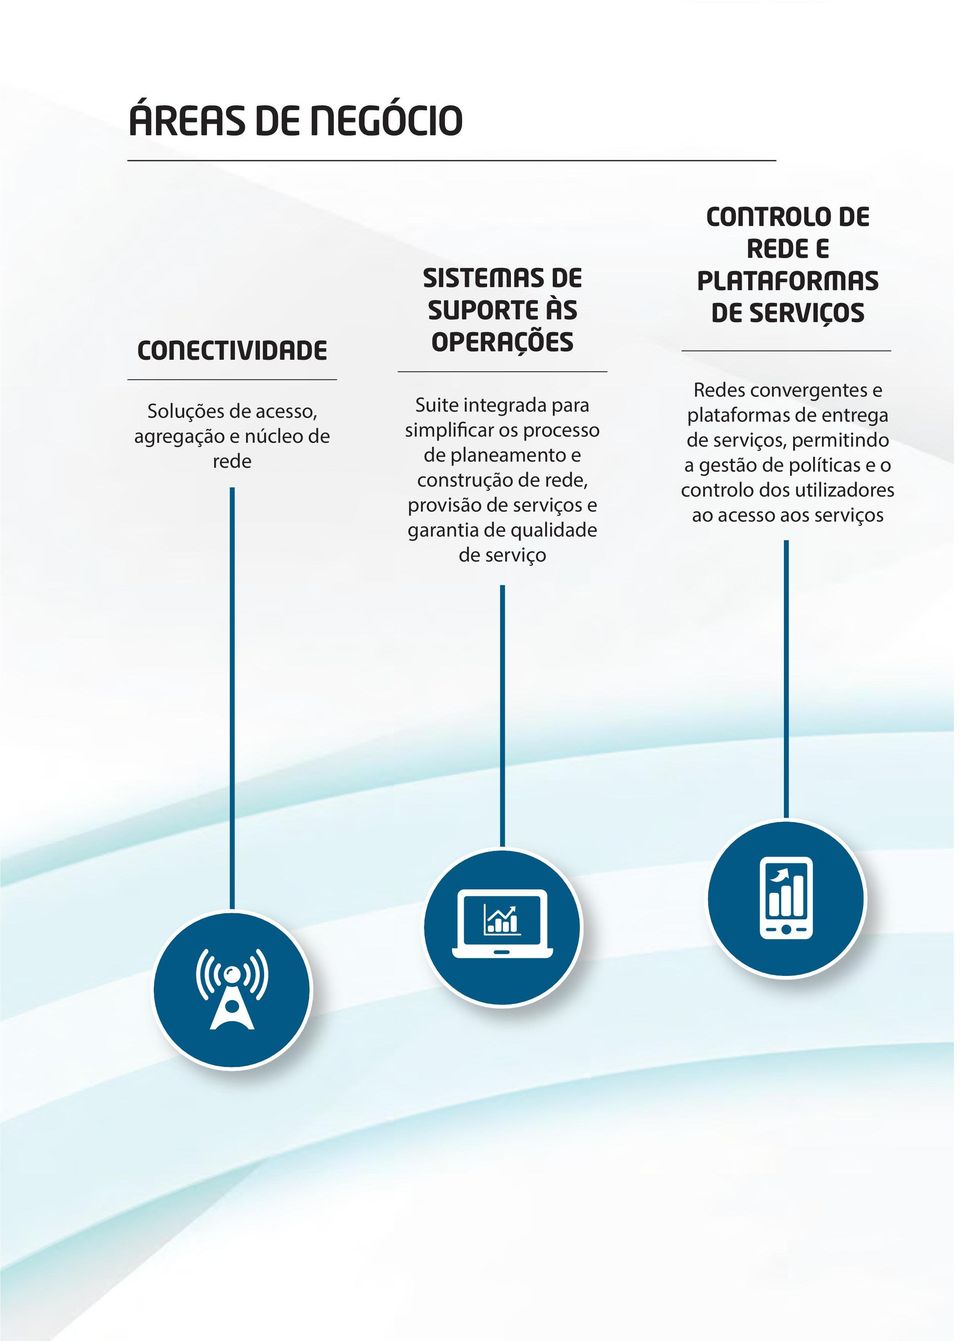 serviços e garantia de qualidade de serviço CONTROLO DE REDE E PLATAFORMAS DE SERVIÇOS Redes convergentes e